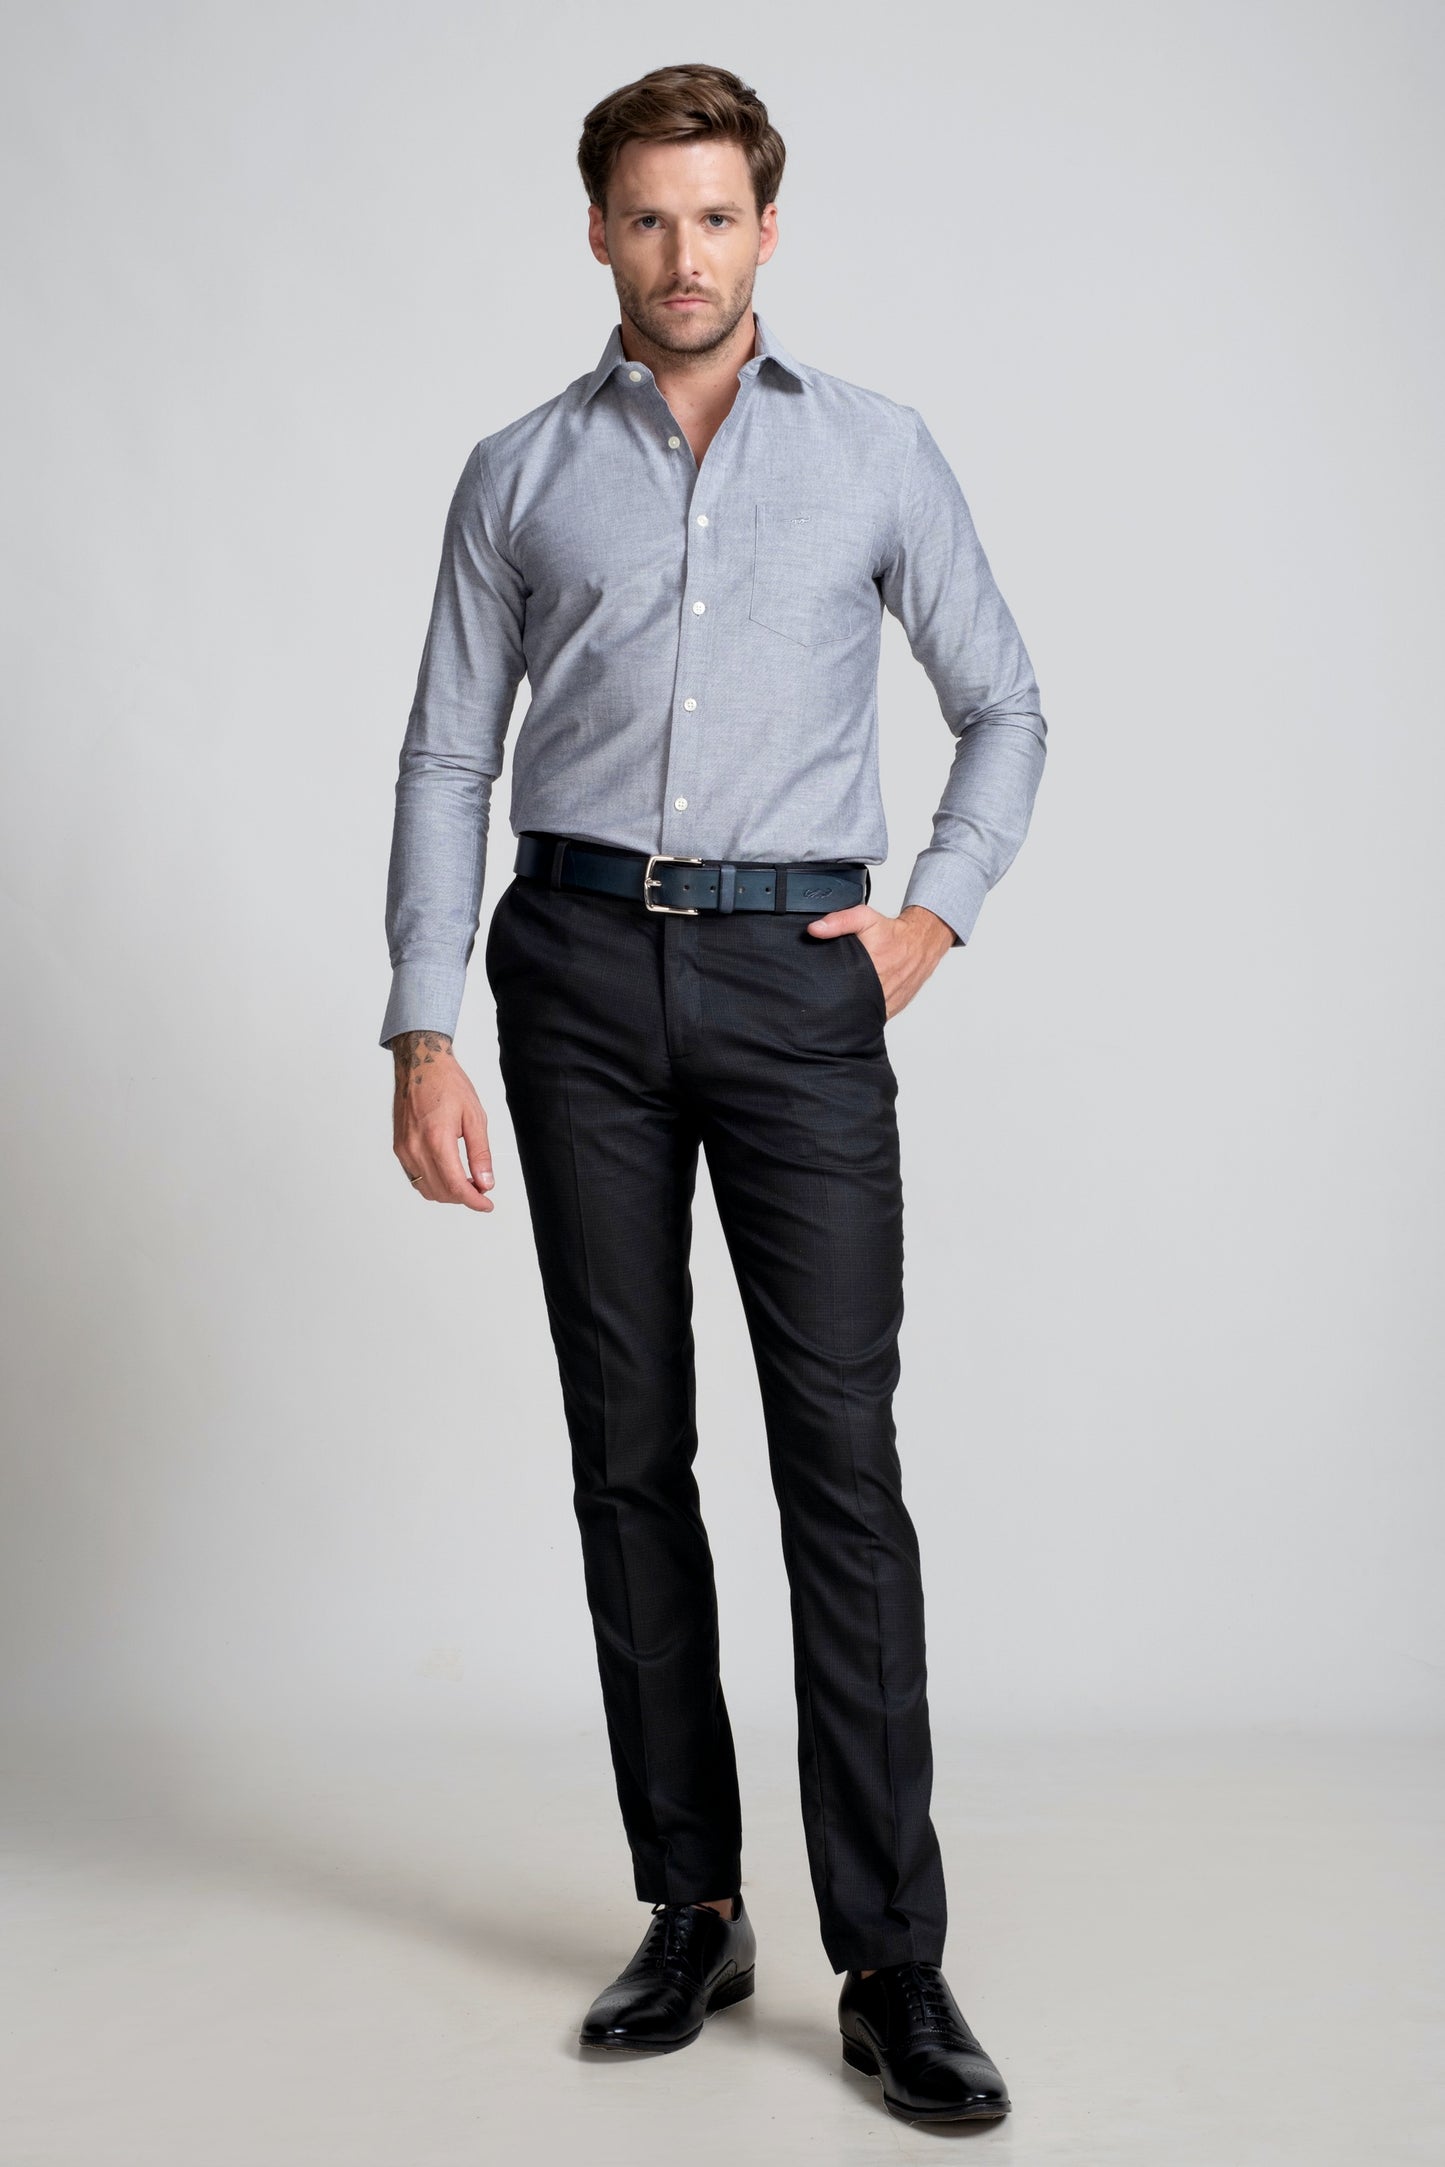 Slim Fit Long Sleeves-Formal Shirts  - Steel Grey